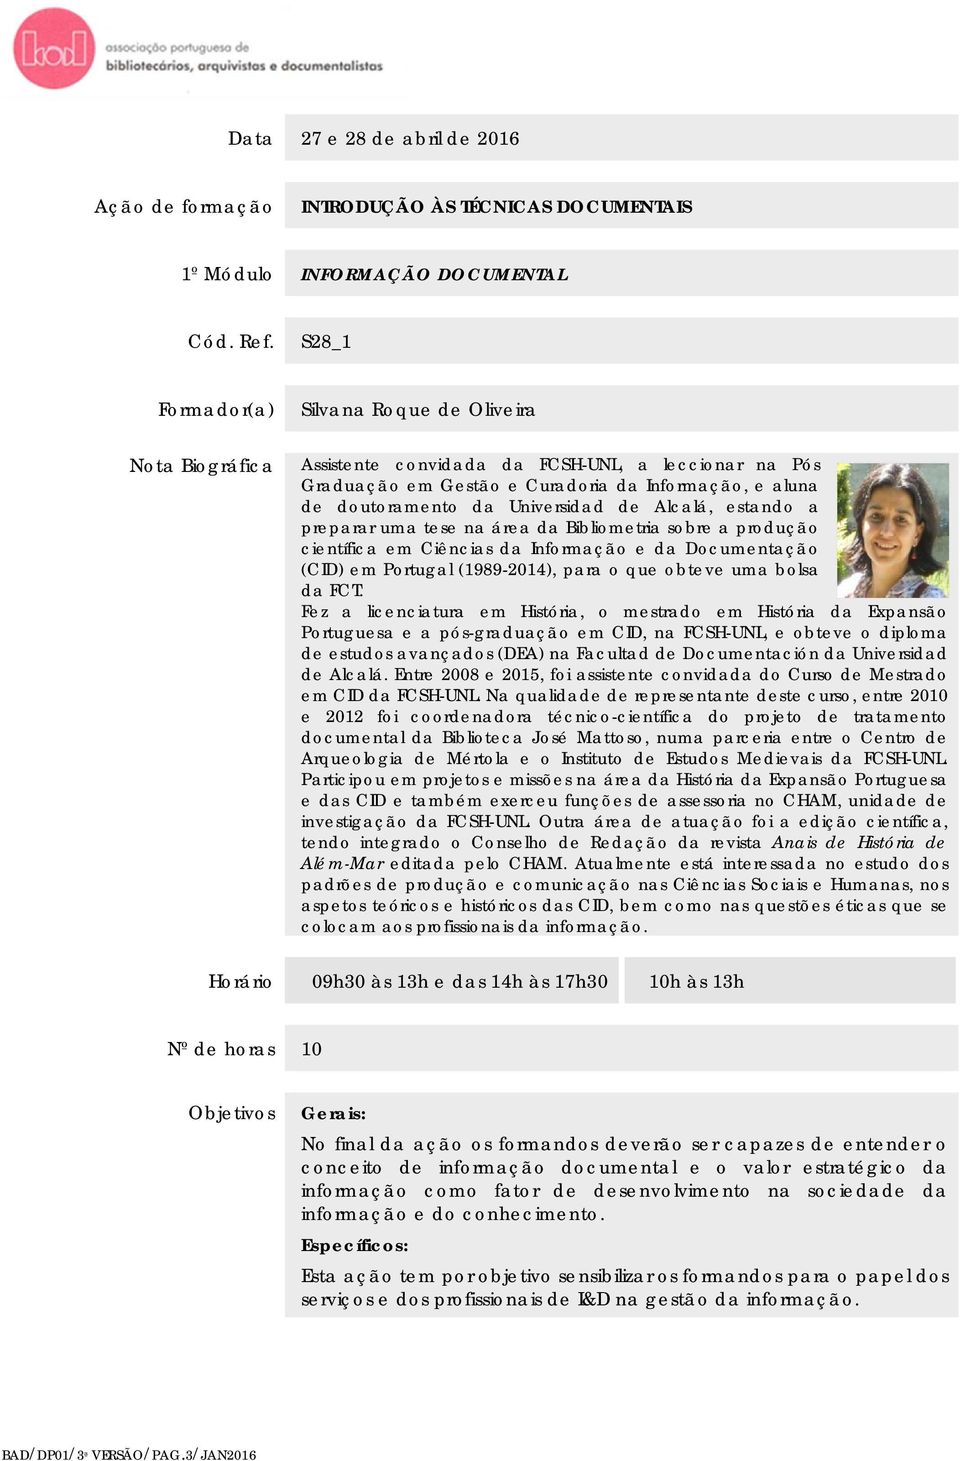 de Alcalá, estando a preparar uma tese na área da Bibliometria sobre a produção científica em Ciências da Informação e da Documentação (CID) em Portugal (1989-2014), para o que obteve uma bolsa da